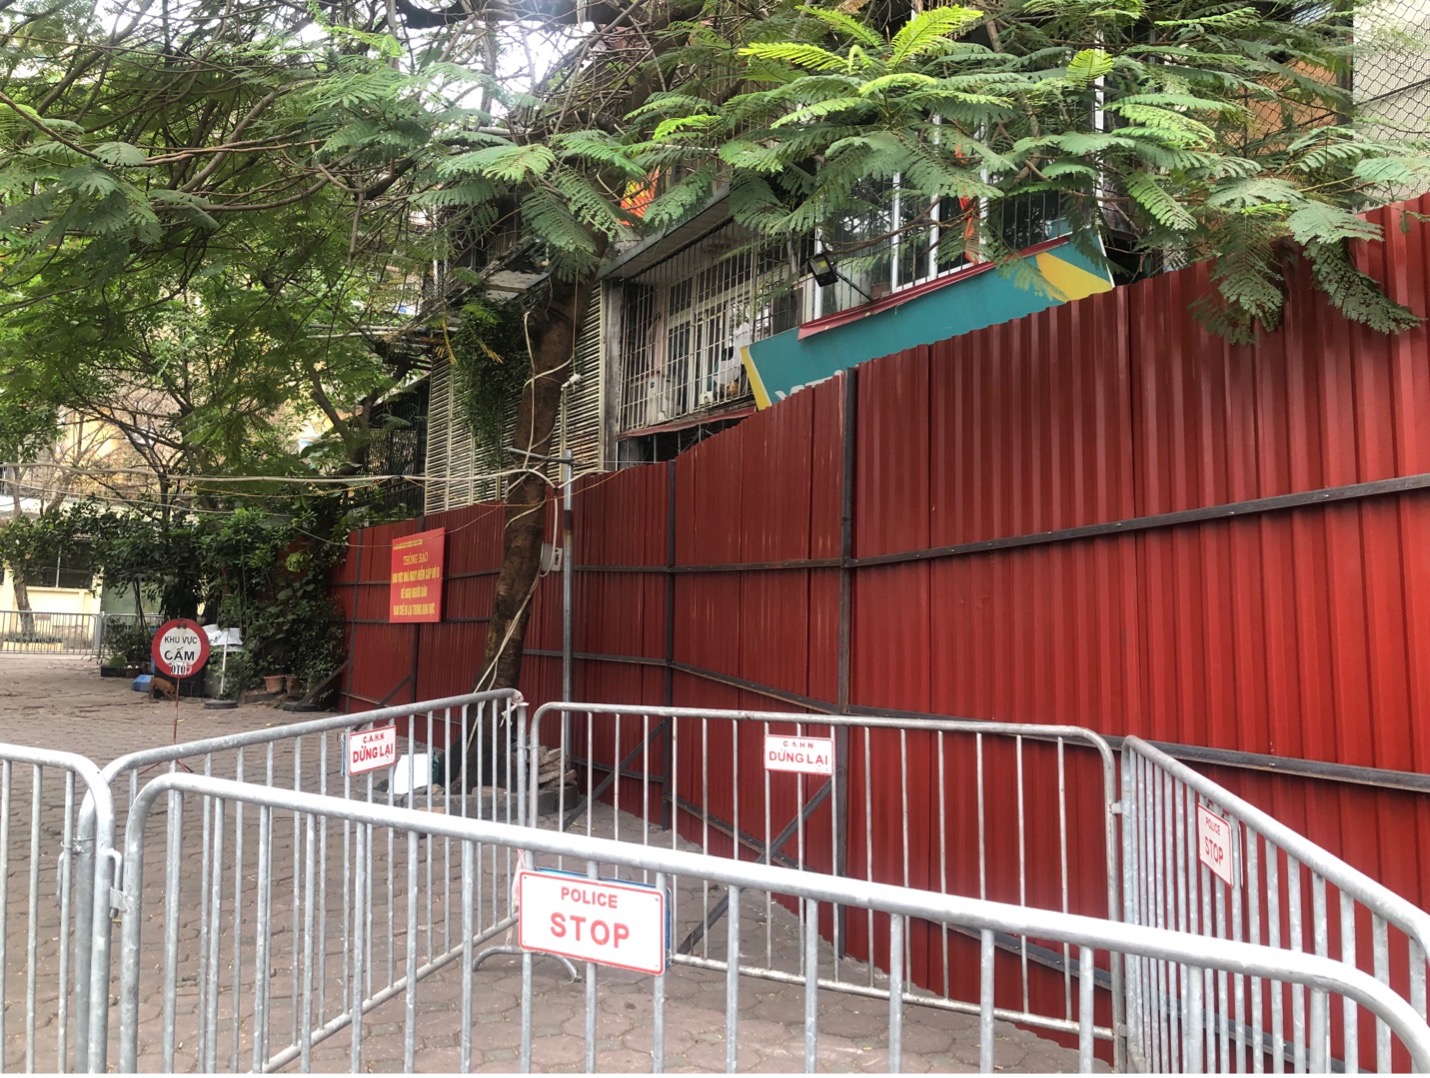 Hà Nội: Chung cư cũ G6A Thành Công bị quây rào tôn kín để đảm bảo an toàn - Ảnh 2.